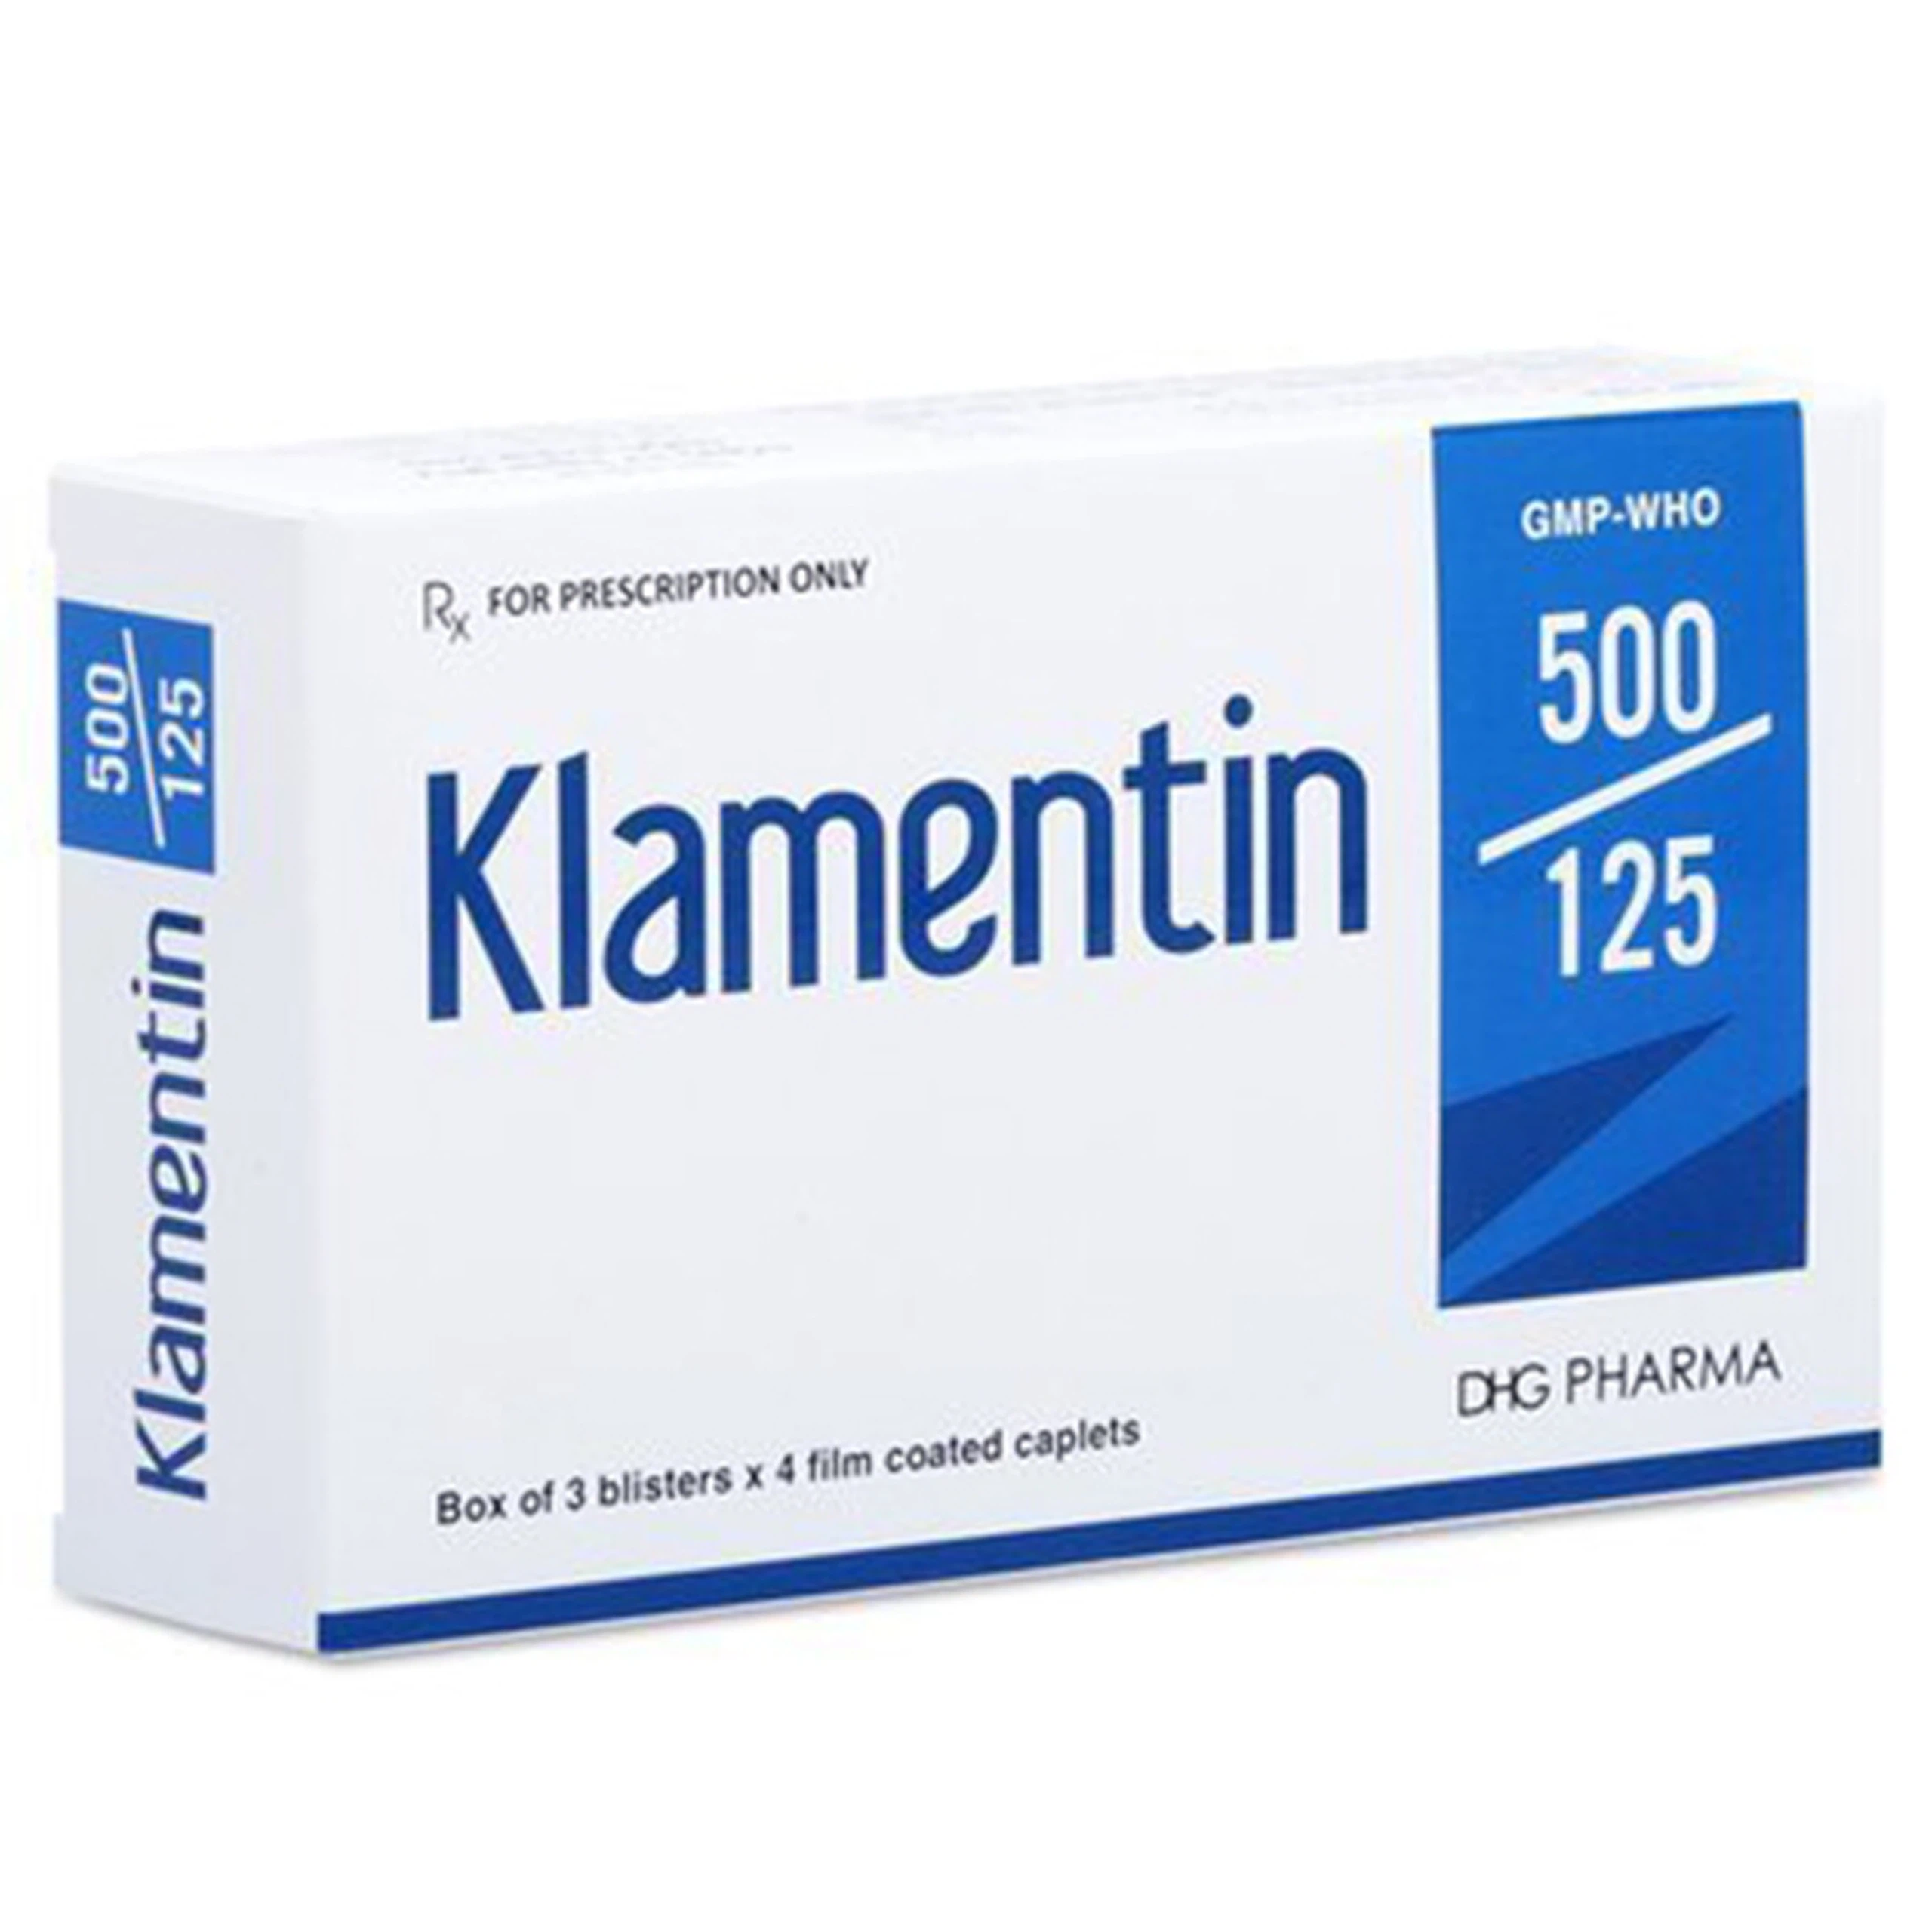 Thuốc Klamentin 500/125 DHG Pharma điều trị viêm xoang, viêm tai giữa, viêm phế quản (3 vỉ x 4 viên)